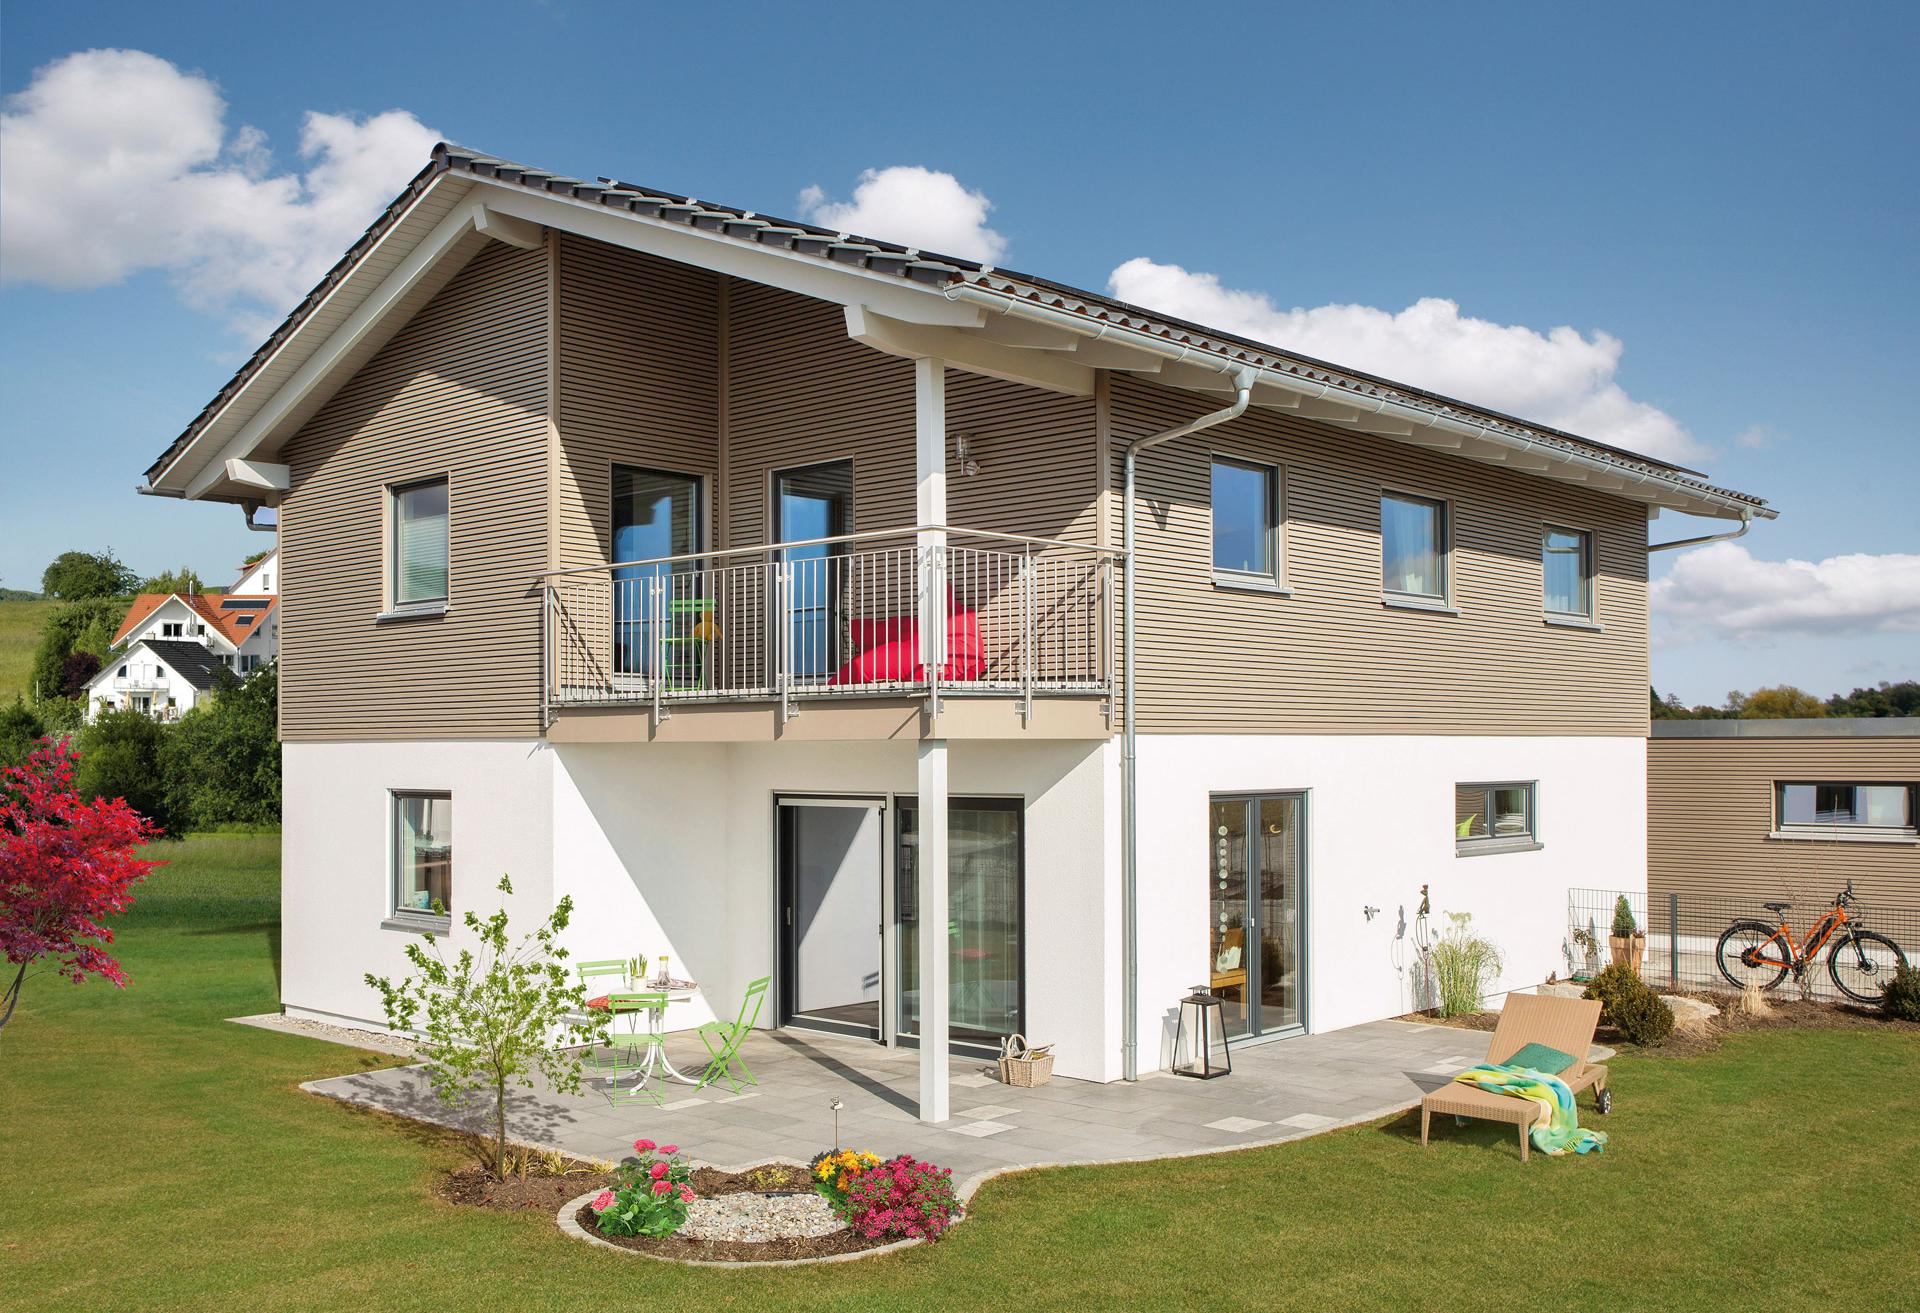 Maison à efficacité énergétique avec toit incliné et système photovoltaïque